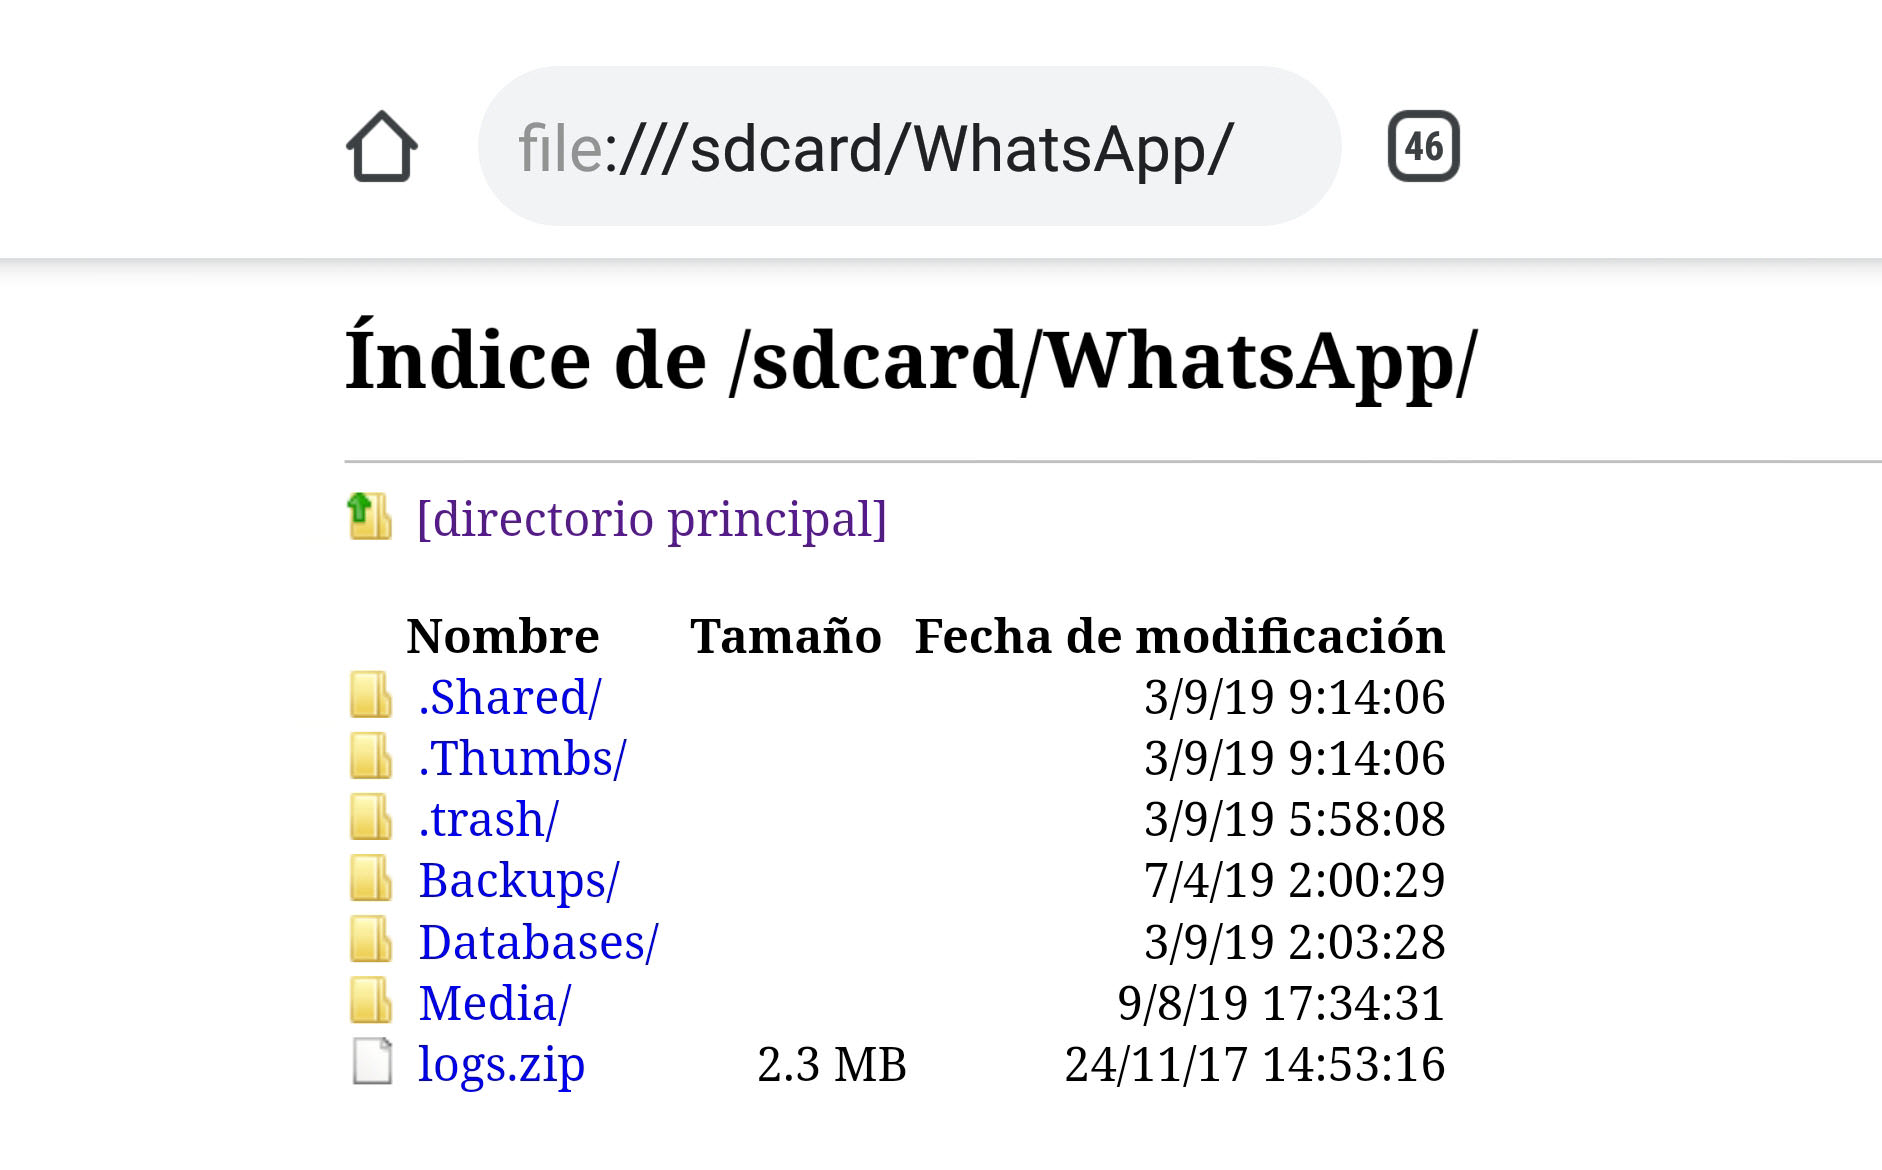 file-sd-card-whatsapp